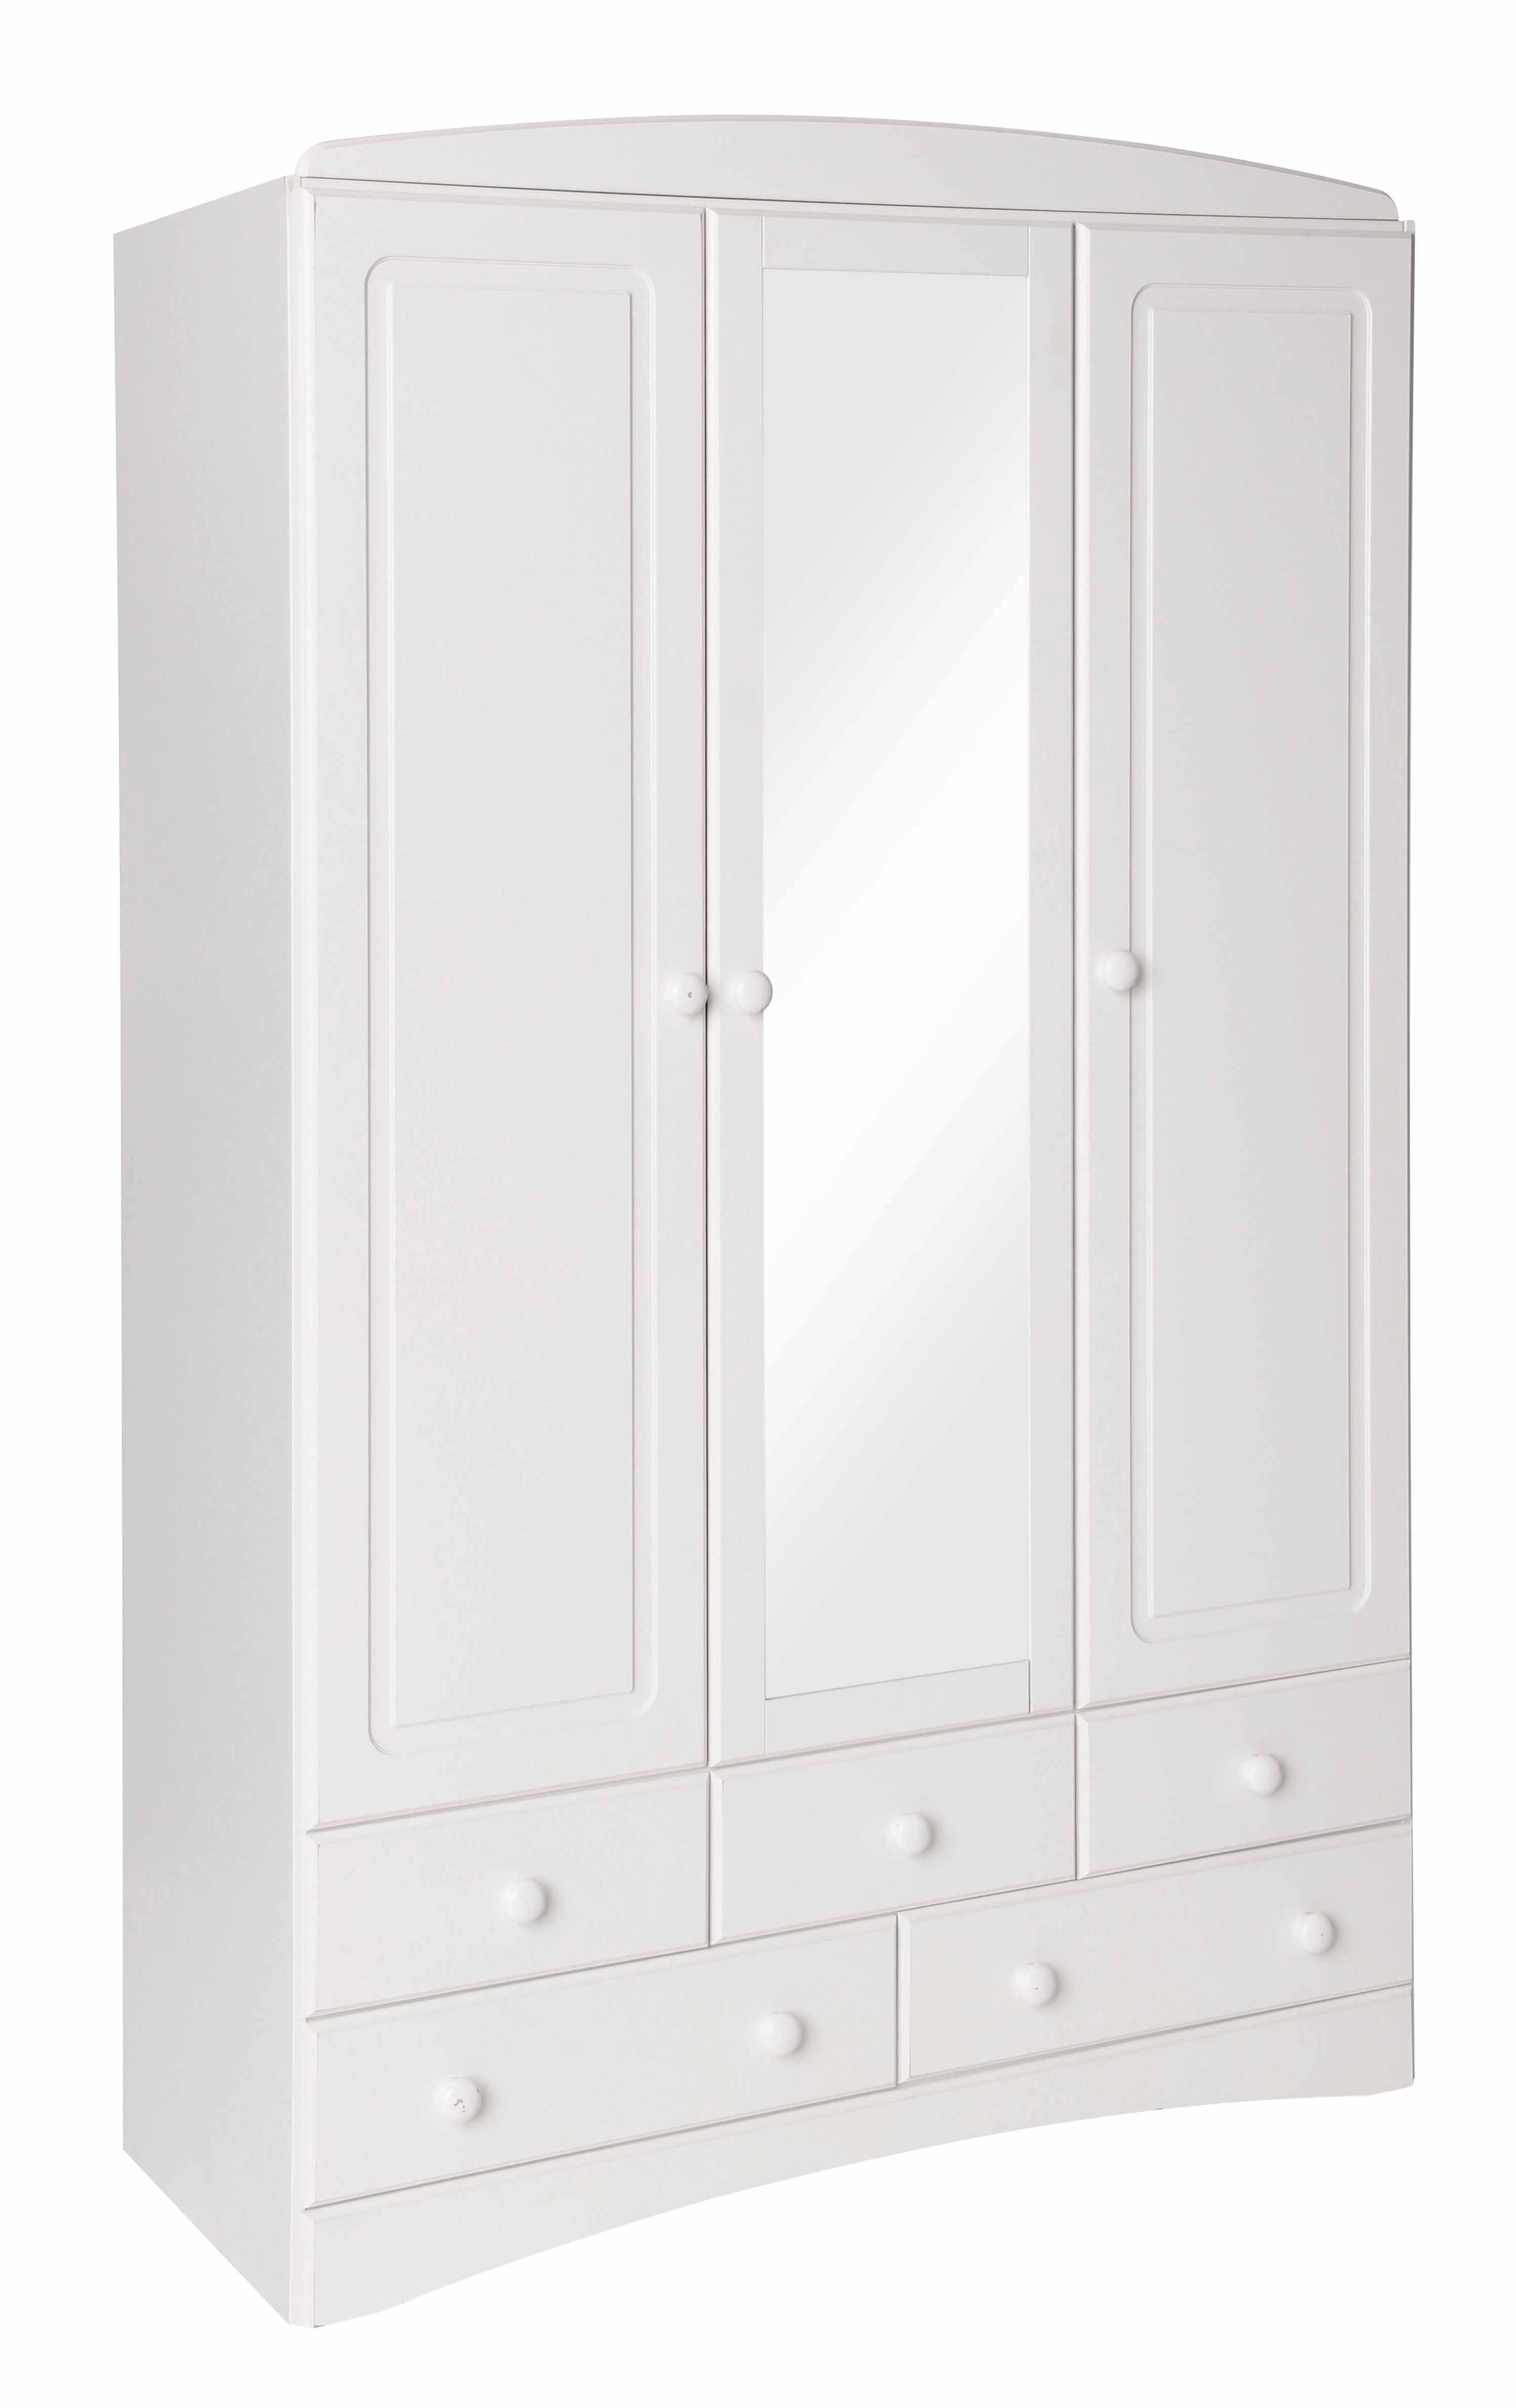 Scandi White 3 Door 5 Drawer Wardrobe With Mirror For White 3 Door Wardrobes With Drawers (View 1 of 15)